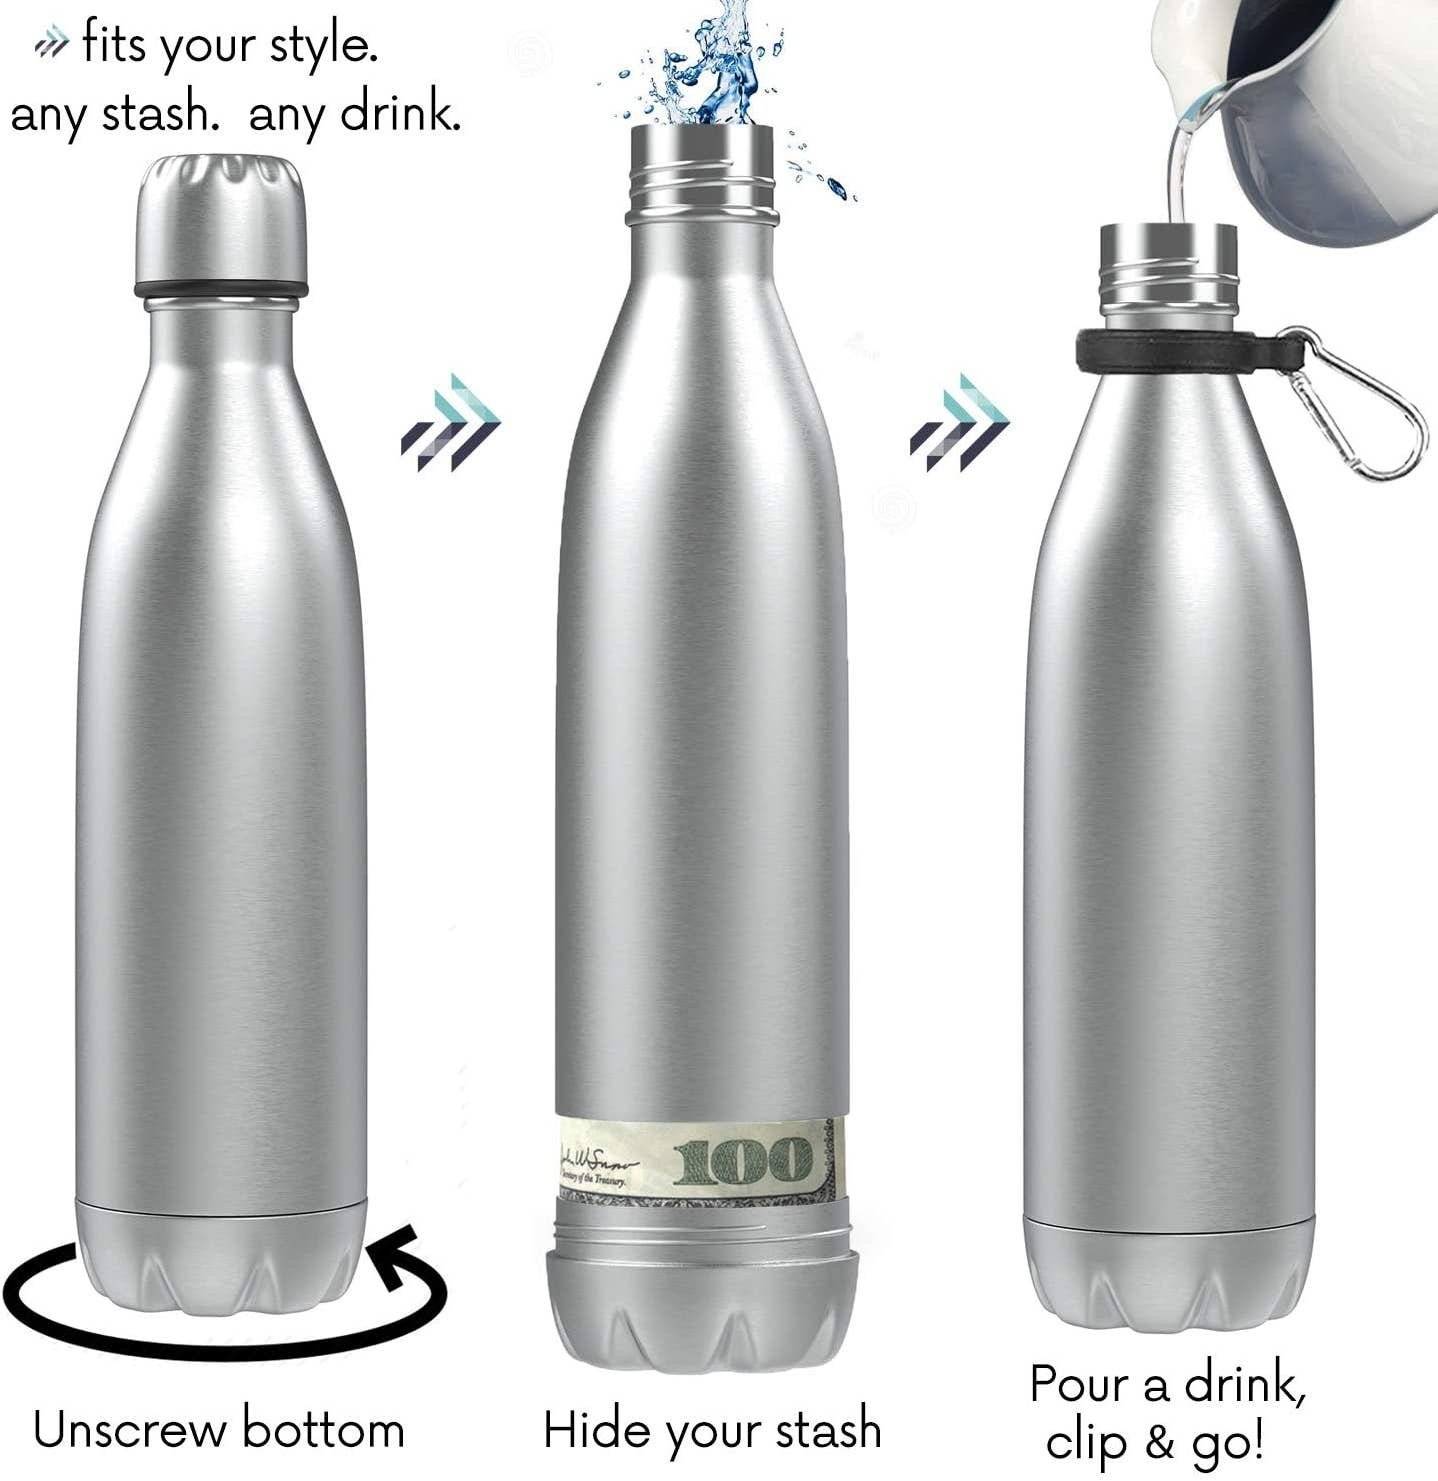 Diversion Safe Water Bottle - Eclections Boutique